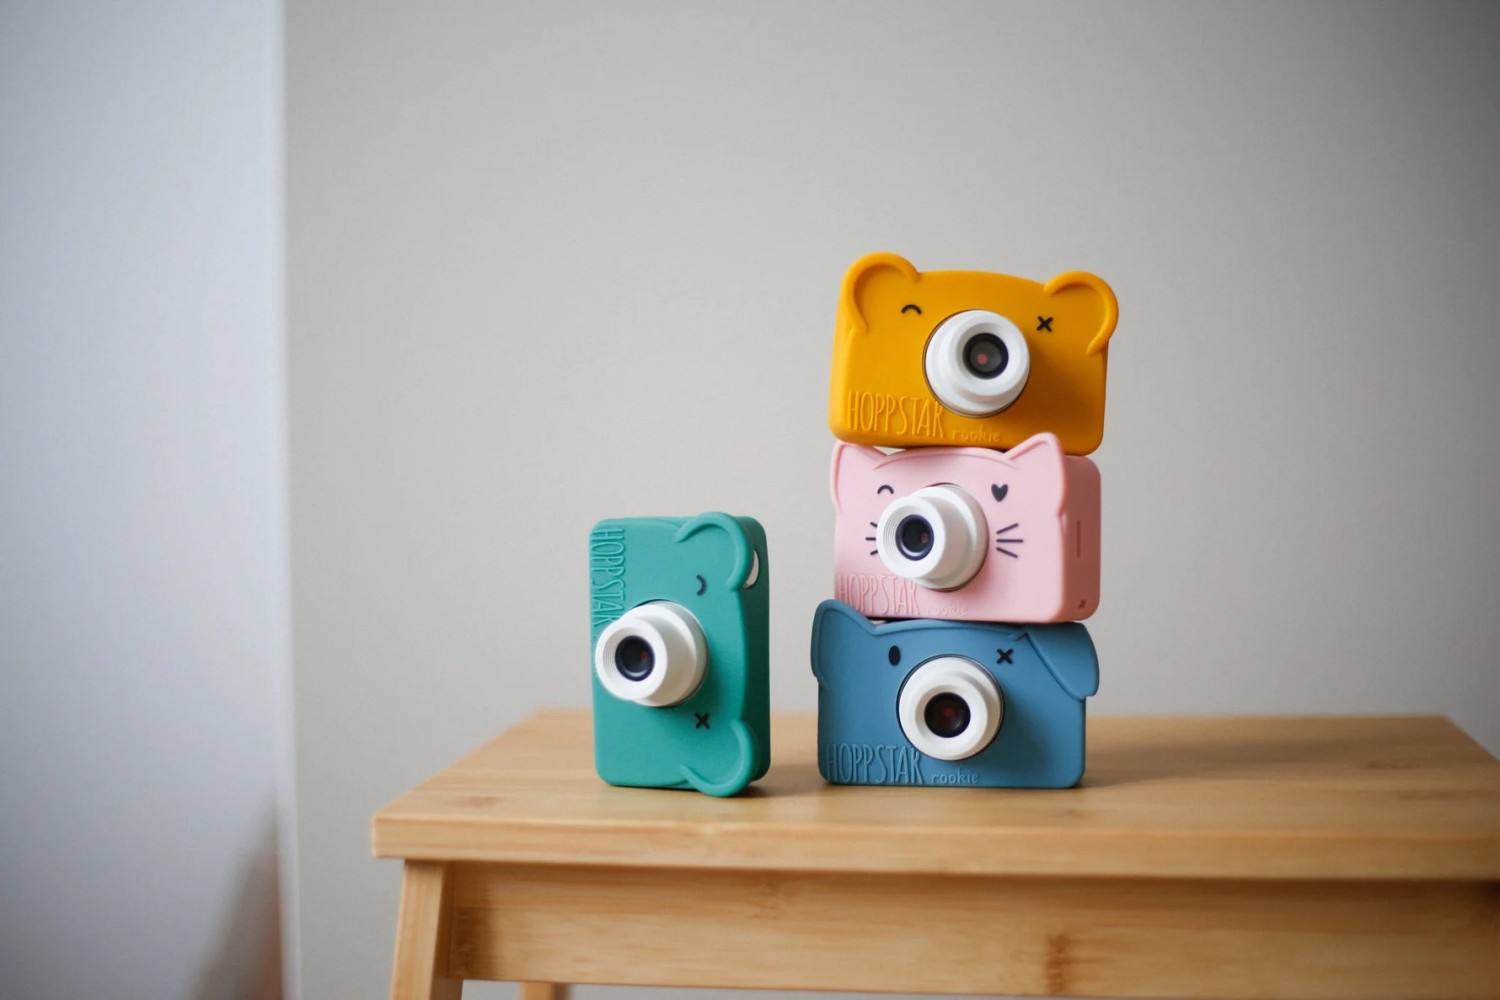 Hoppstar | Kindercamera's met een vrolijk design en kwalitatieve foto's